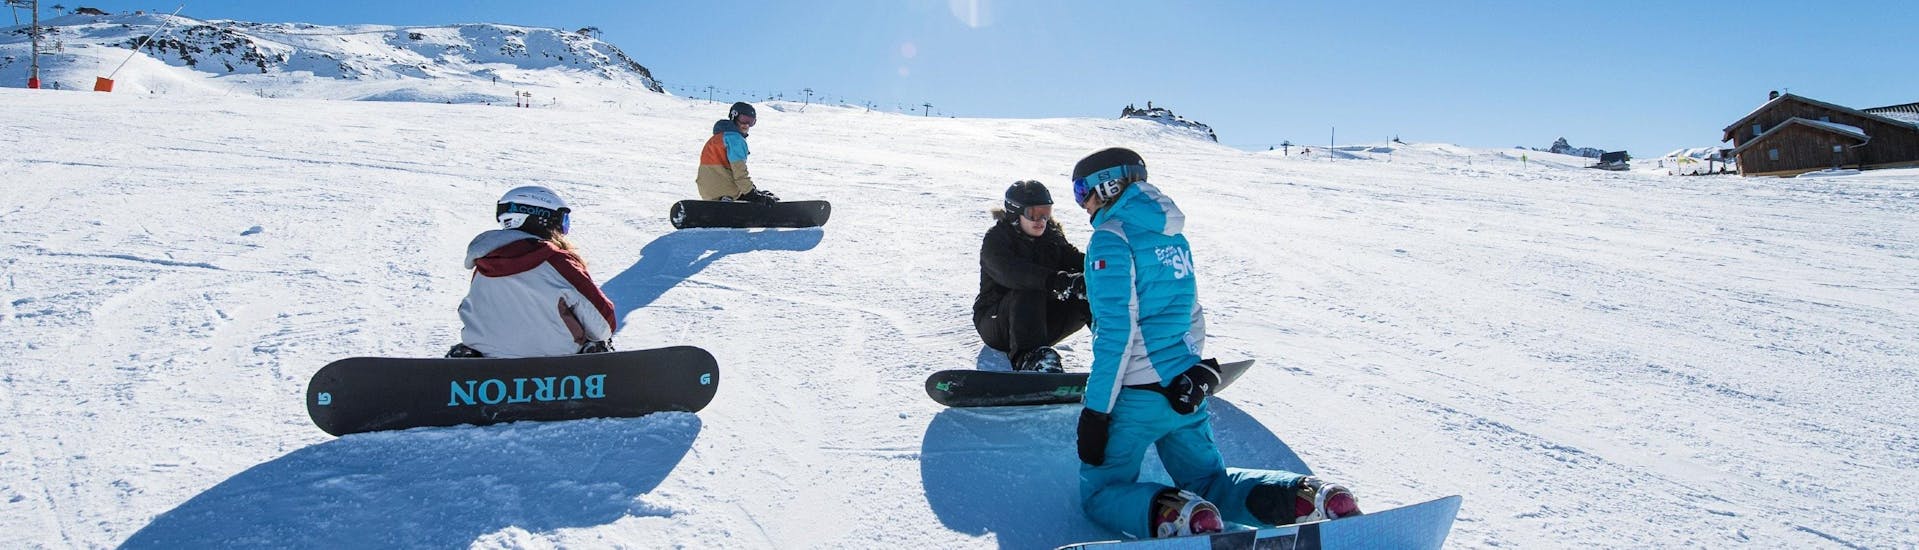 Snowboardlessen vanaf 15 jaar voor alle niveaus.